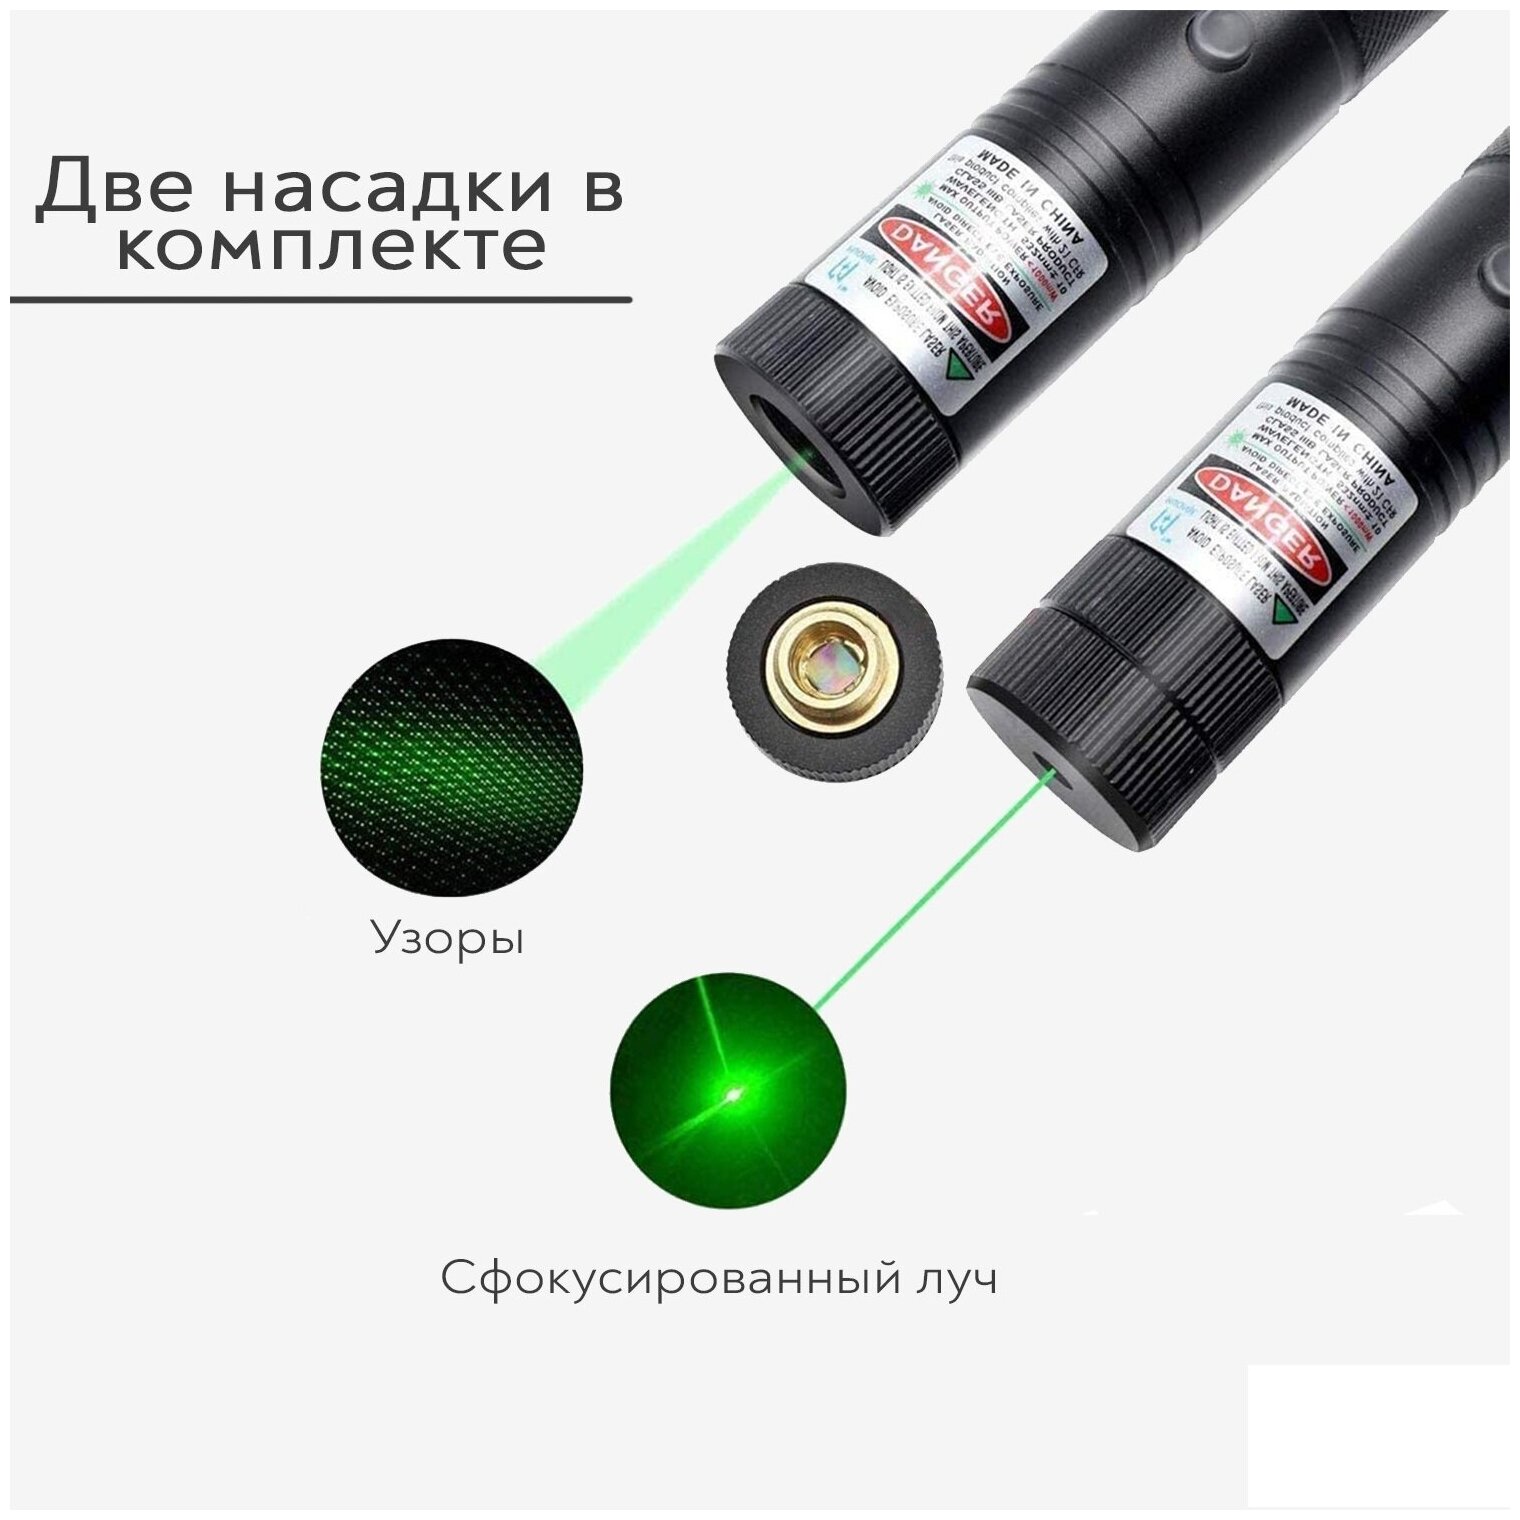 Лазерная указка SimpleShop мощная аккумуляторная с насадкой диммером зеленый луч для презентаций конференций для подачи сигнала и туризма